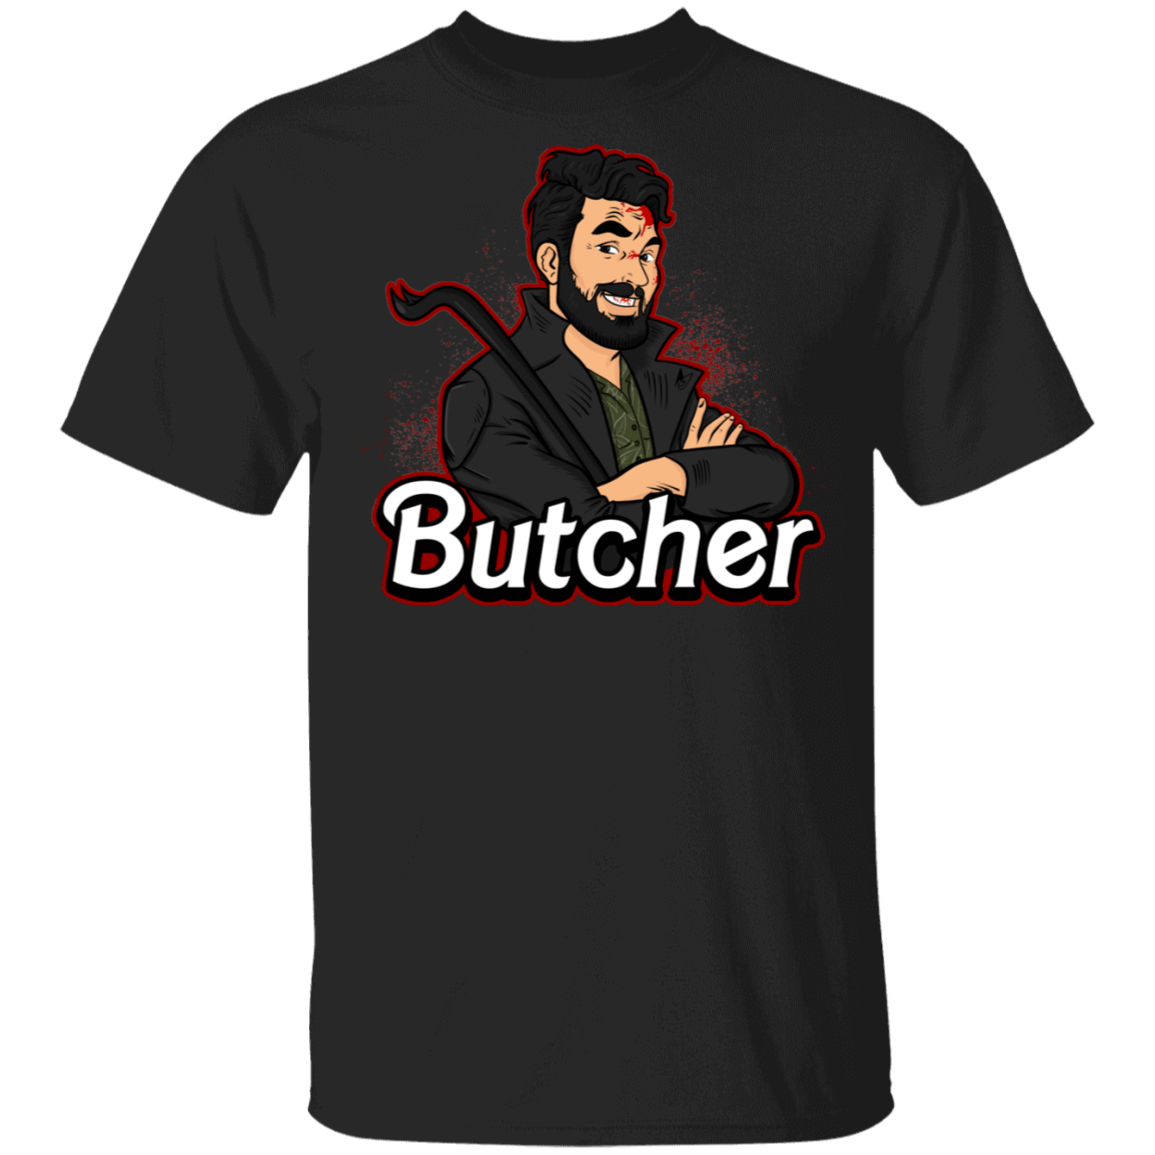 T-Shirts Black / S Butcher T-Shirt